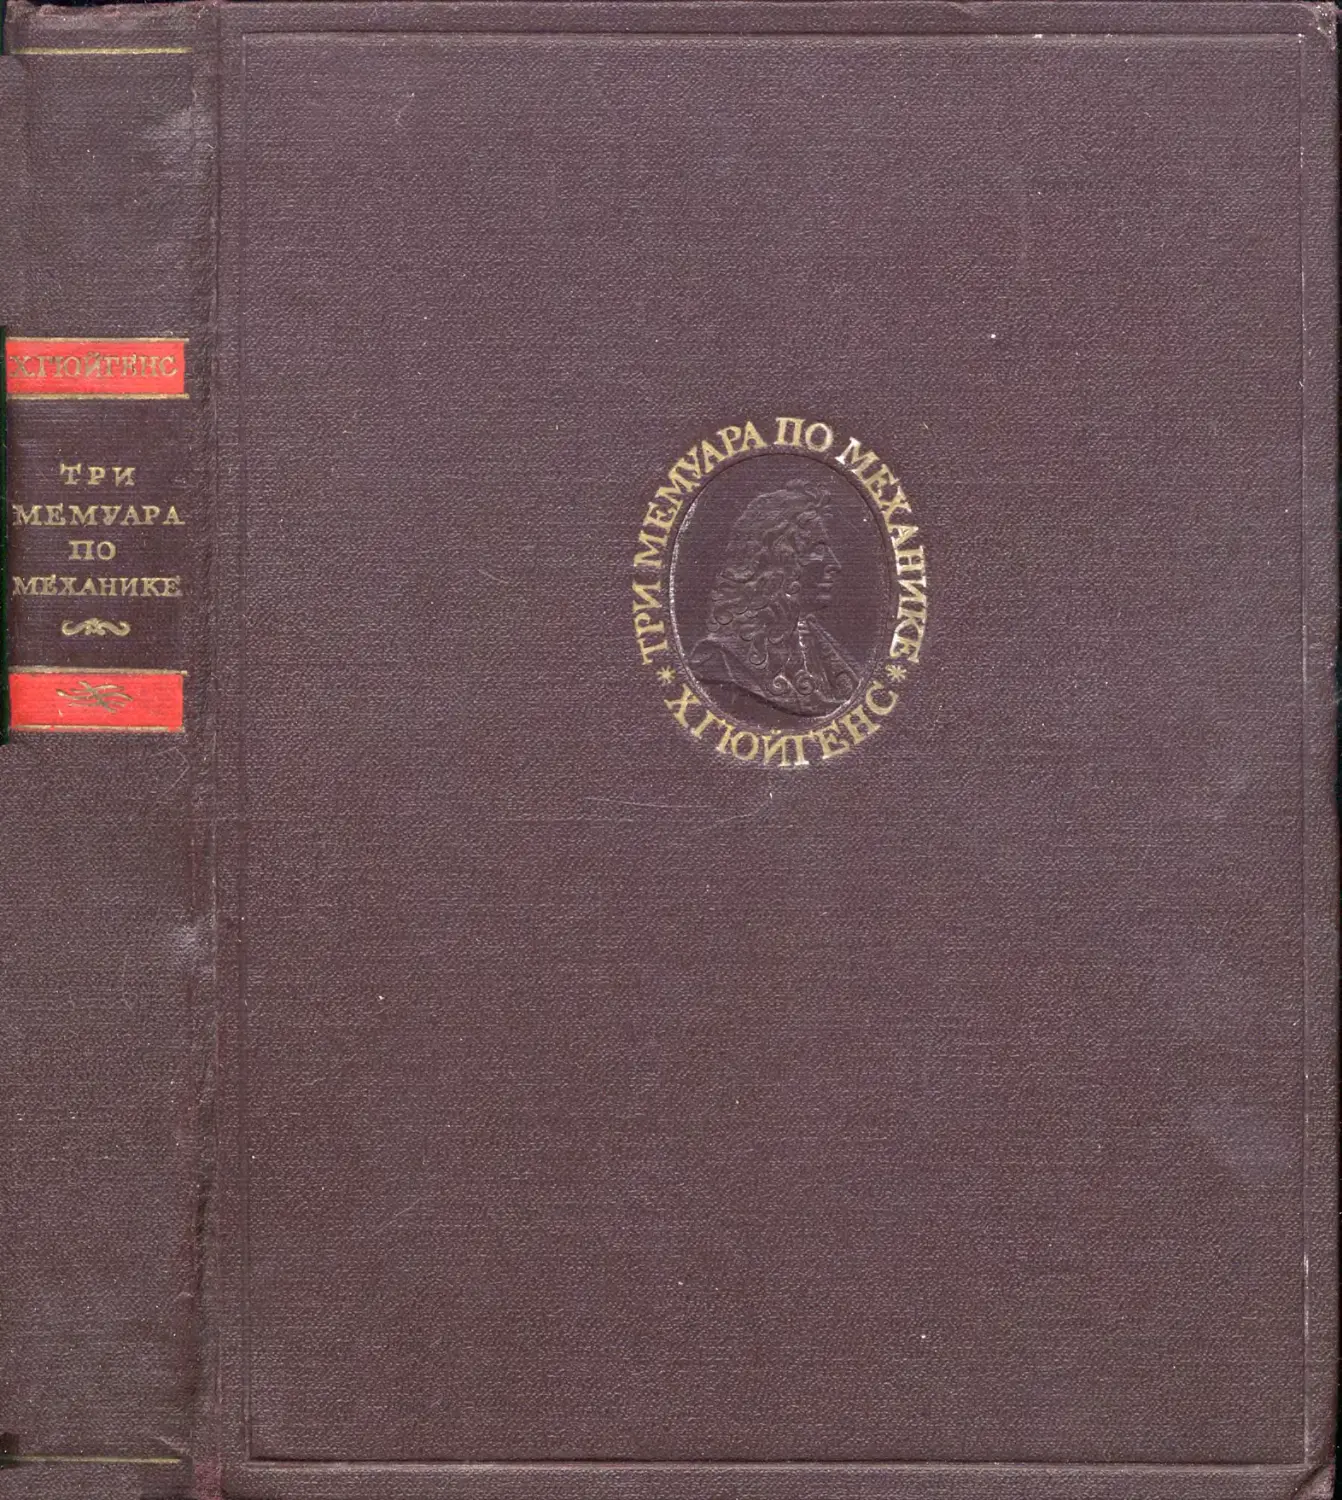 Гюйгенс X. Три мемуара по механике - 1951